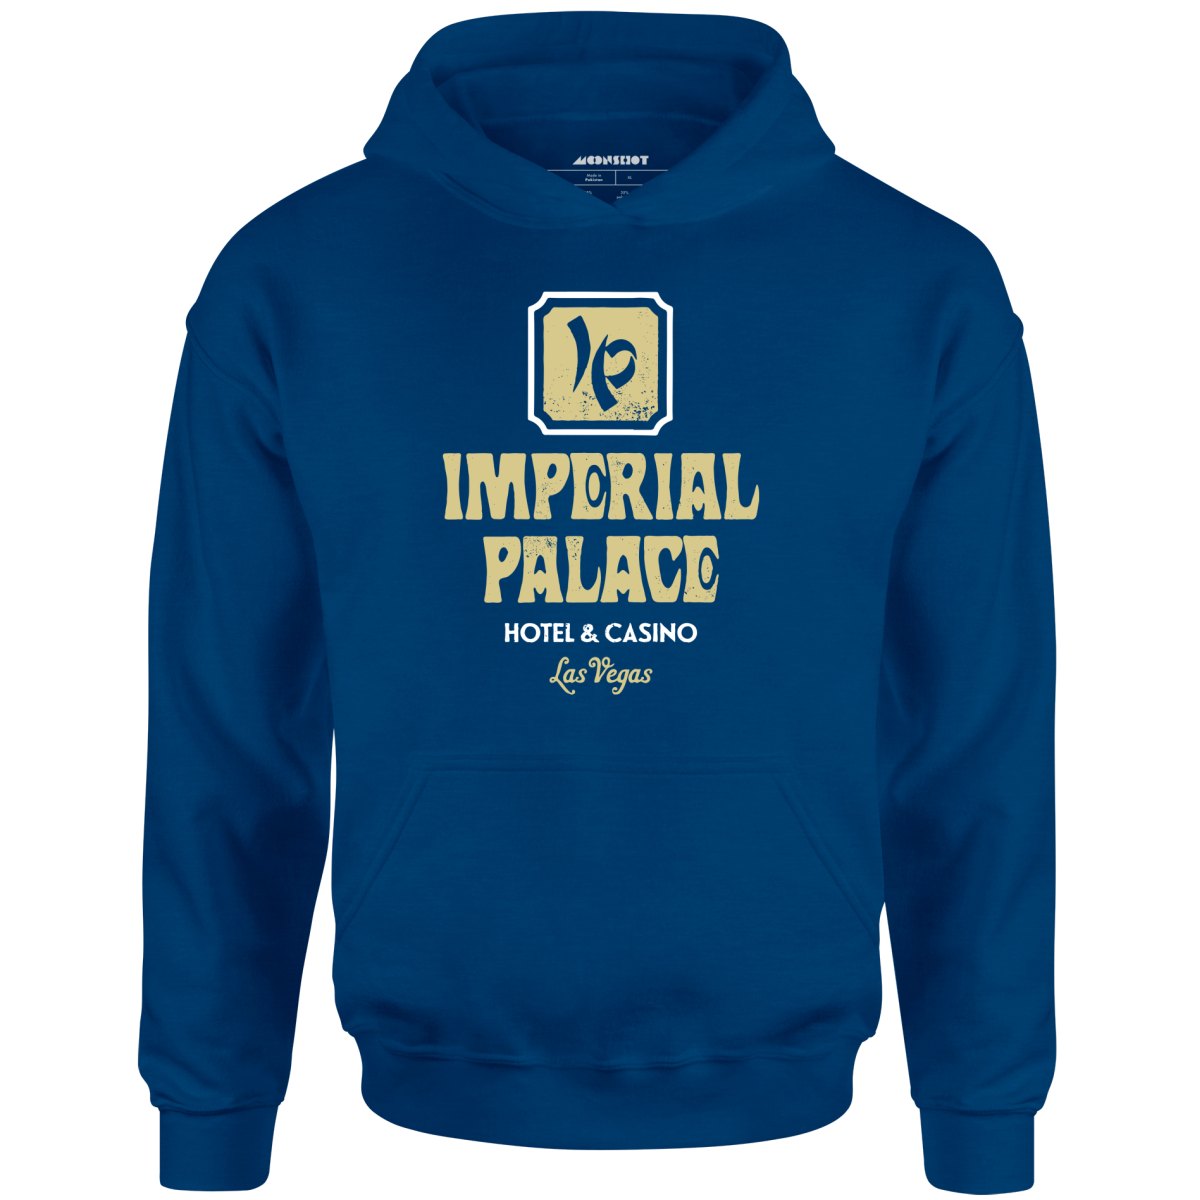 Imperial Palace Hotel & Casino - Vintage Las Vegas - Unisex Hoodie